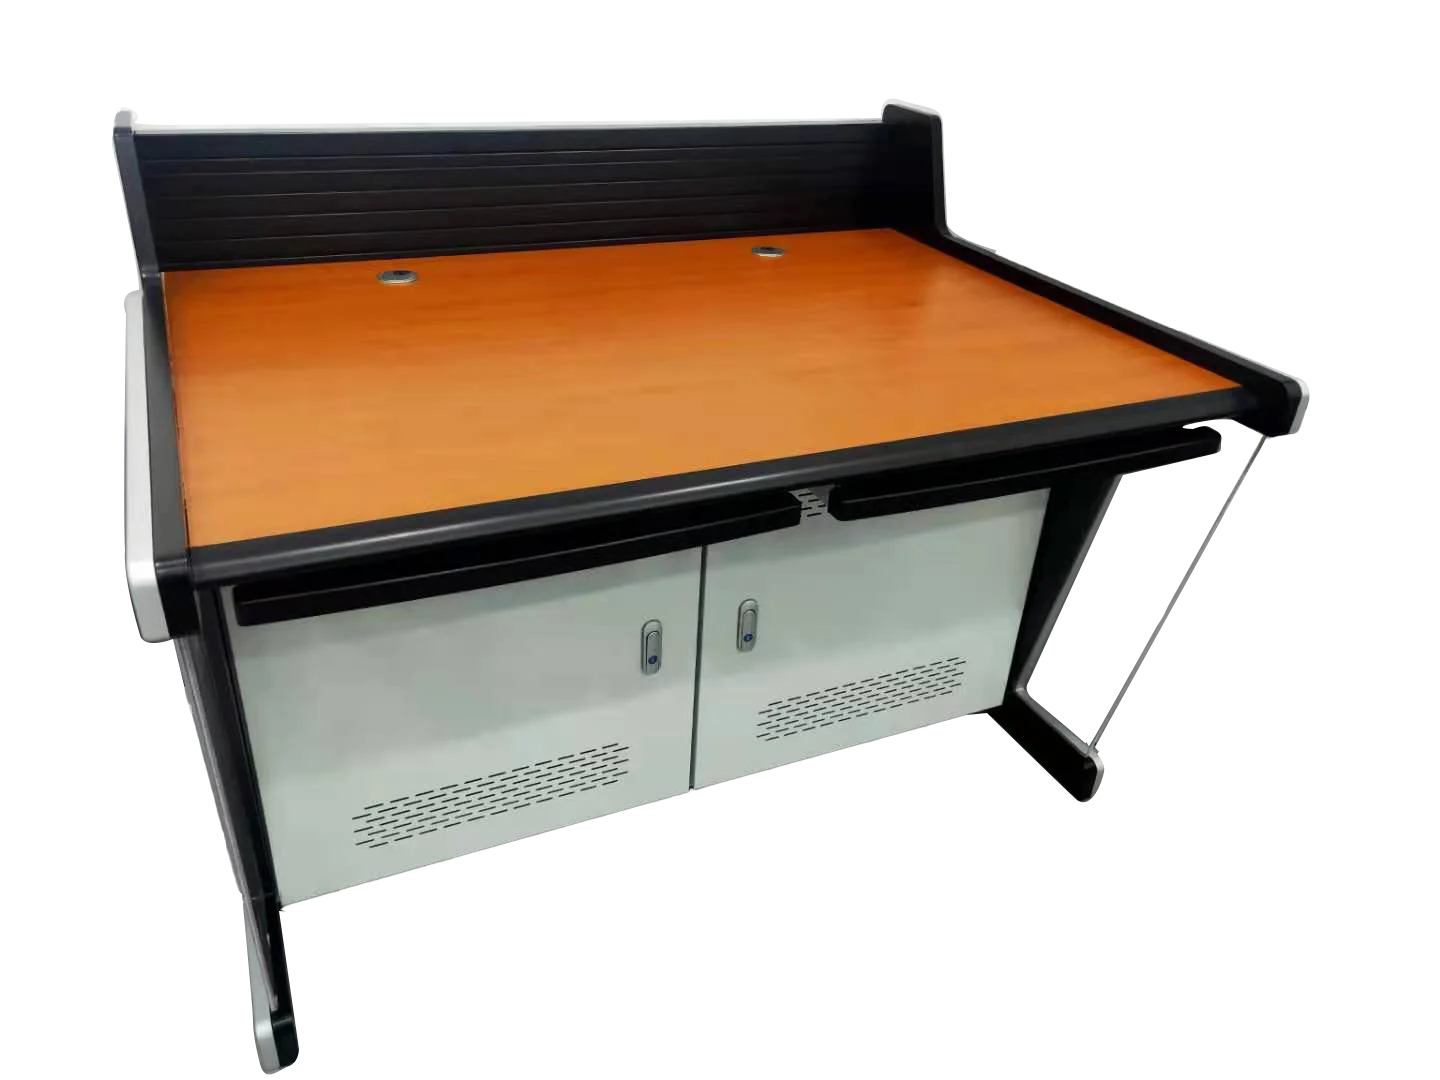 SD-W-001New дизайн офисной мебели монитор консоли оборудование для игровой консоли